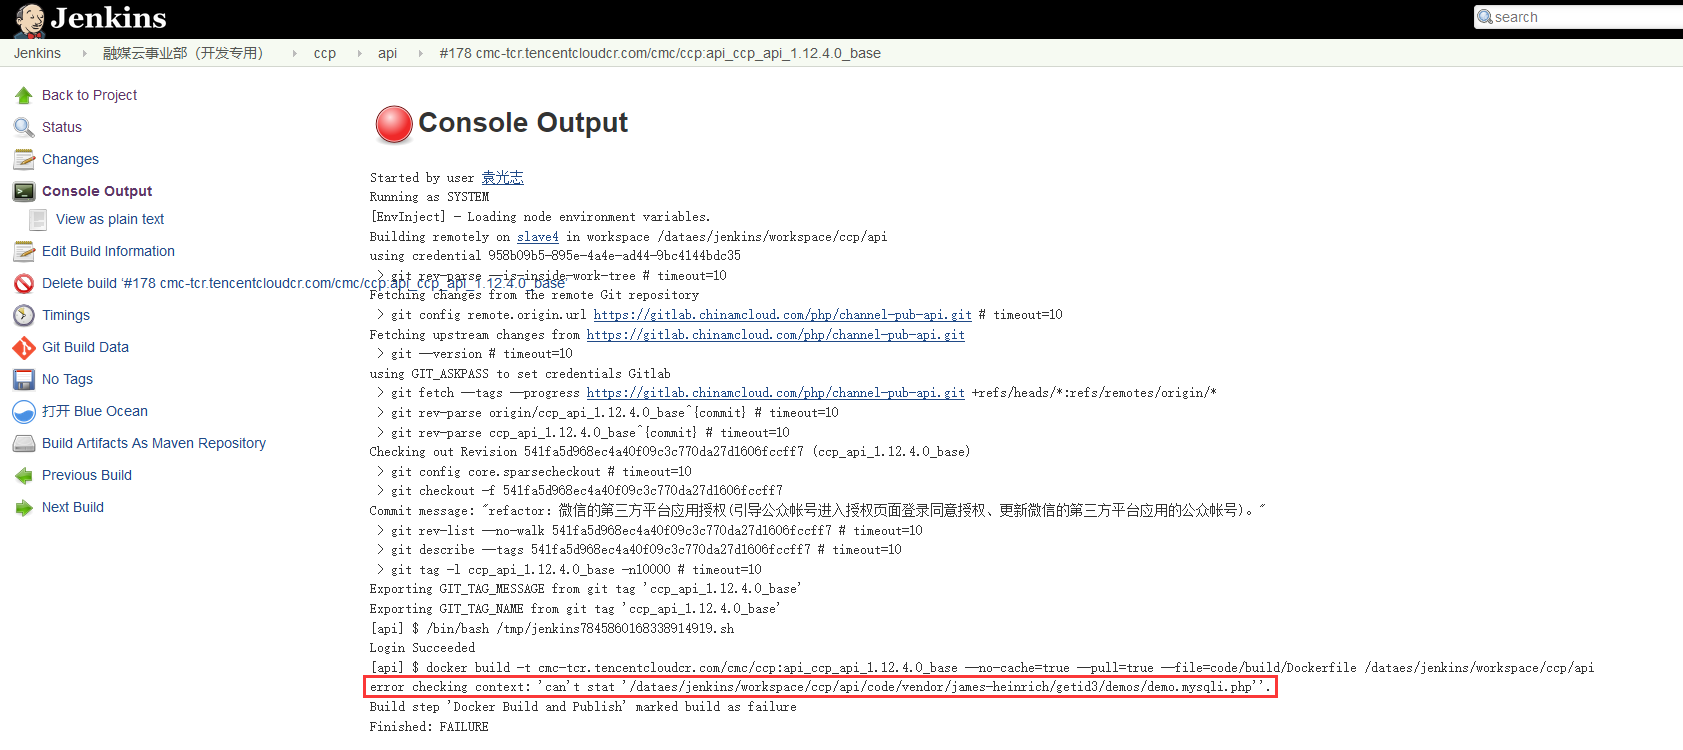 在 Jenkins 中构建镜像时报错：error checking context: 'can't stat '/dataes/jenkins/workspace/ccp/api/code/vendor/james-heinrich/getid3/demos/demo.mysqli.php''